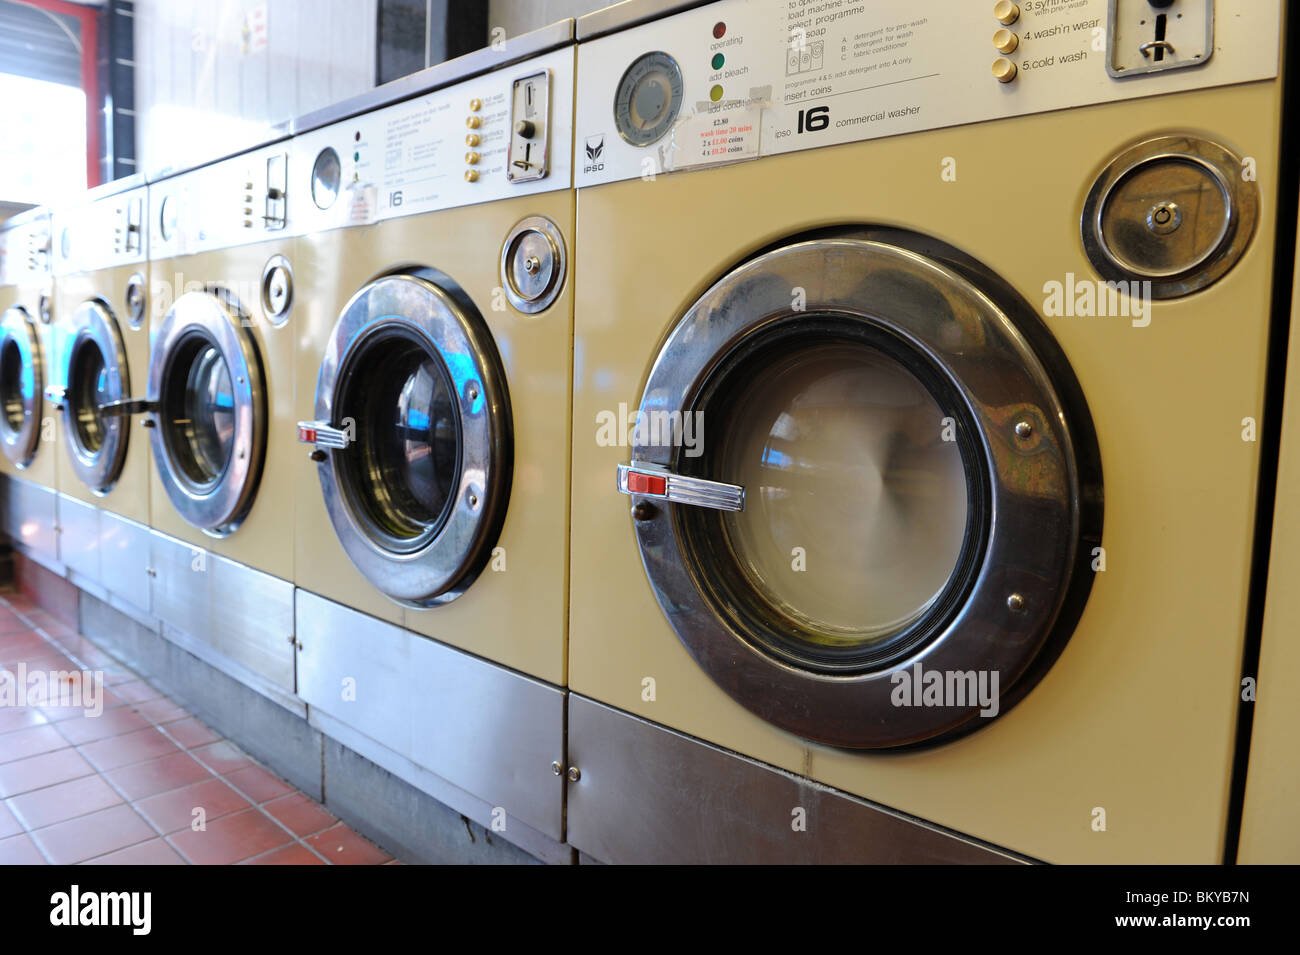 Waschmaschine im Waschsalon England Uk Stockfoto